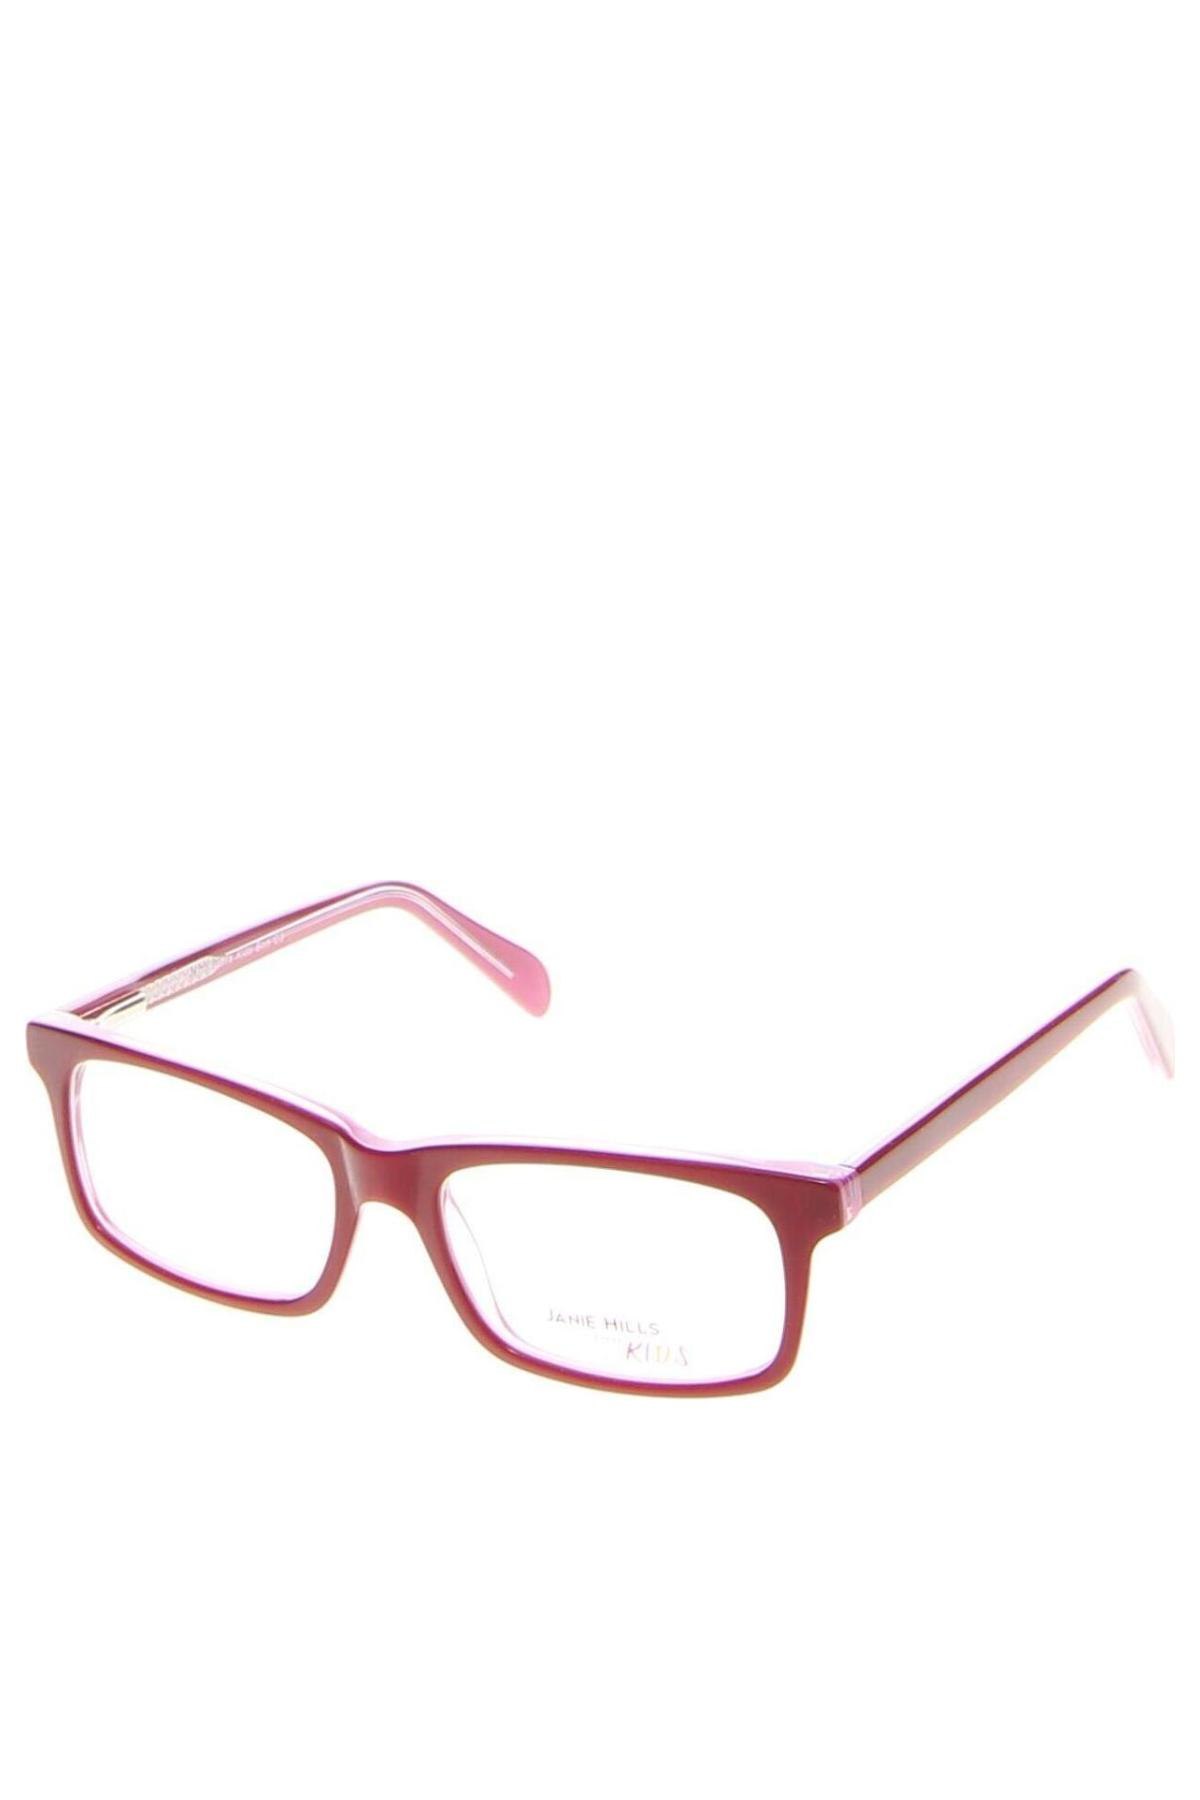 Παιδικοί σκελετοί γυαλιών Janie Hills, Χρώμα Κόκκινο, Τιμή 28,69 €